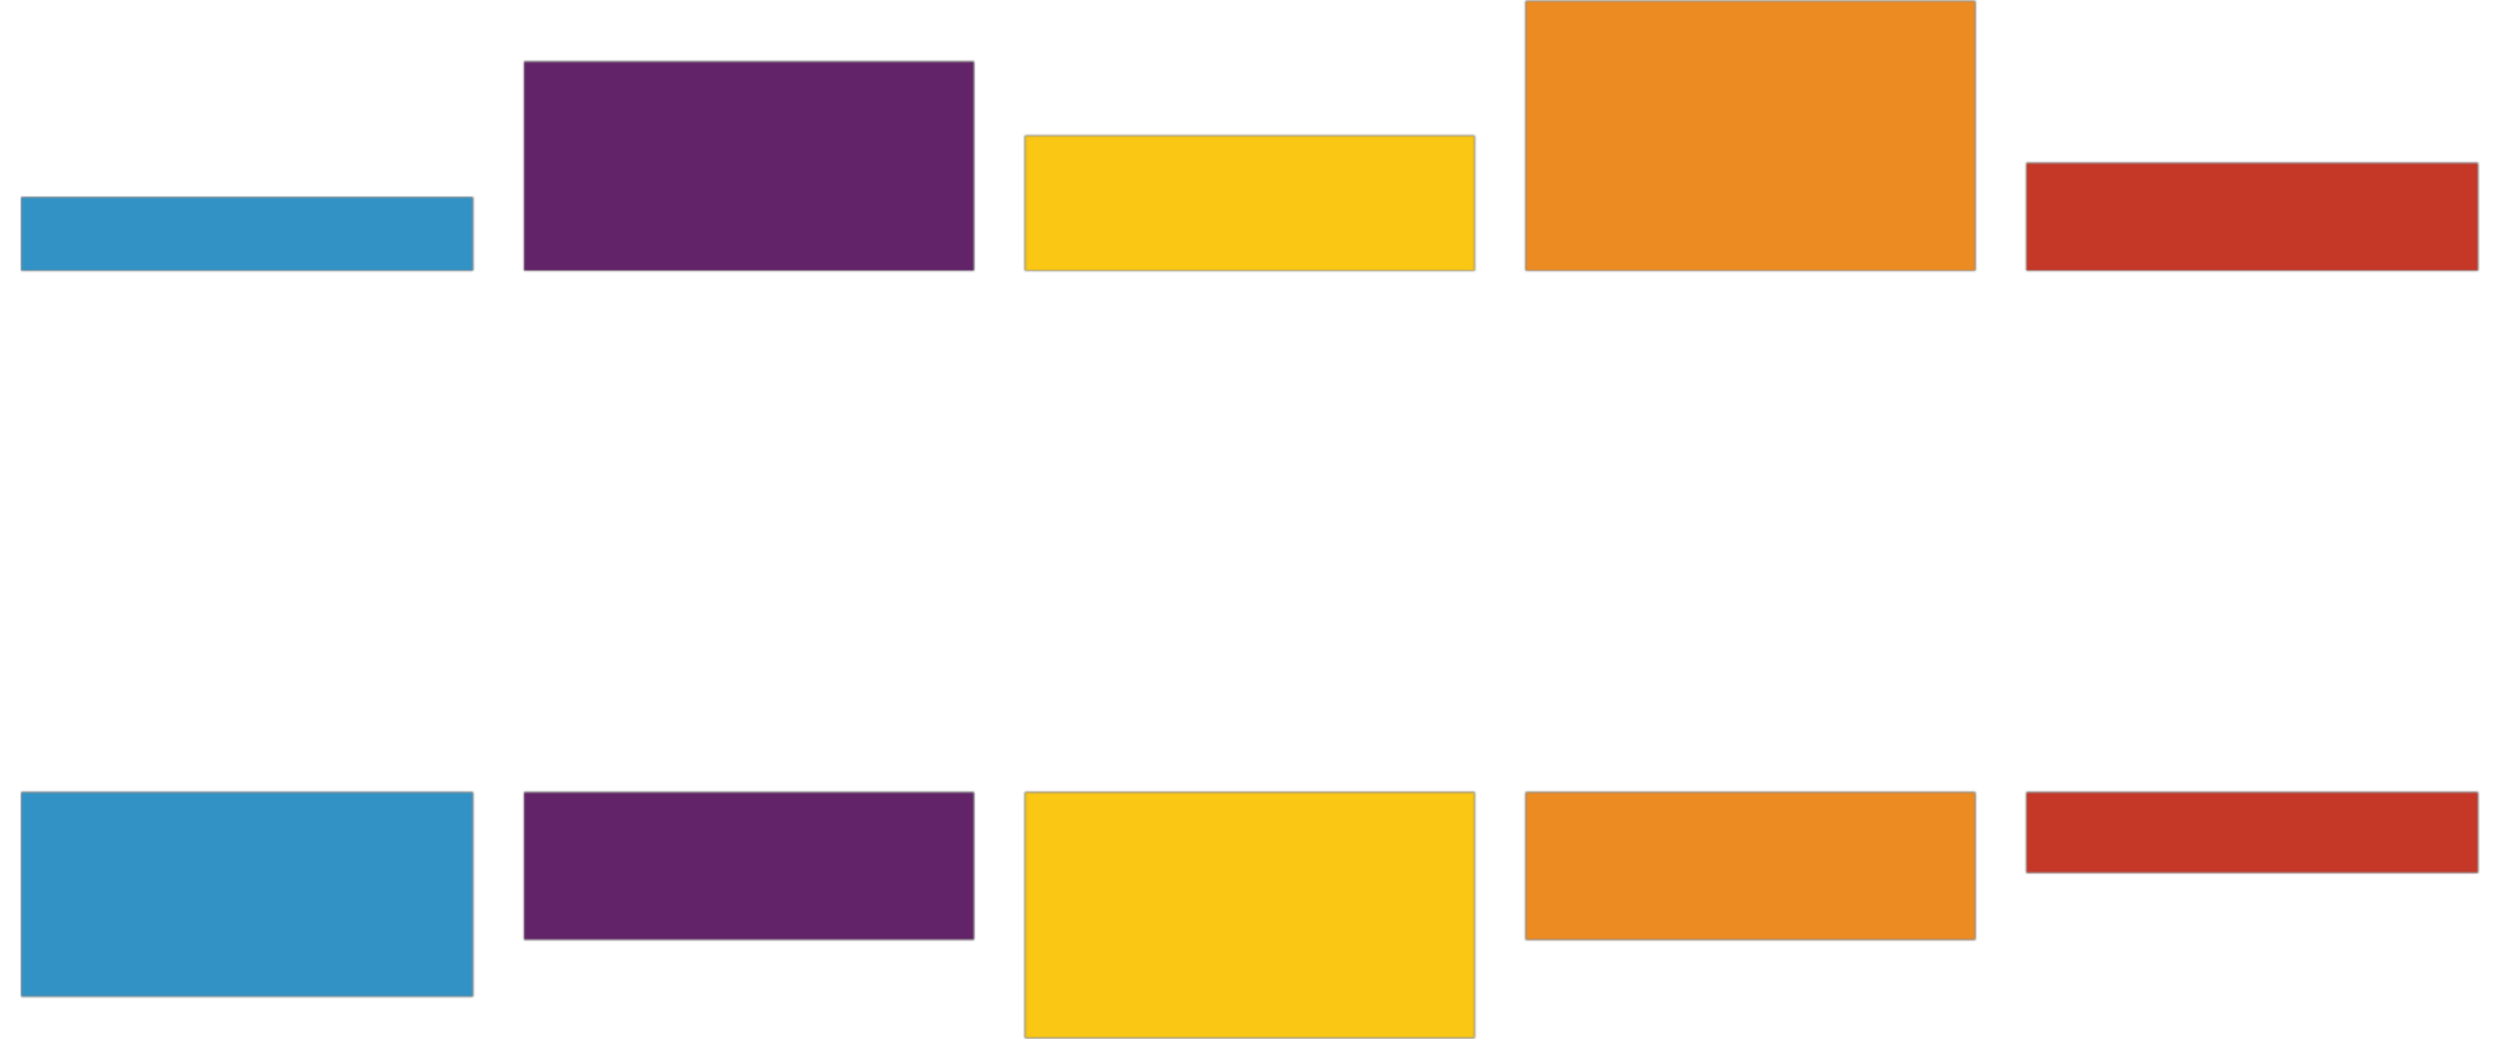 stitcher logo white.png